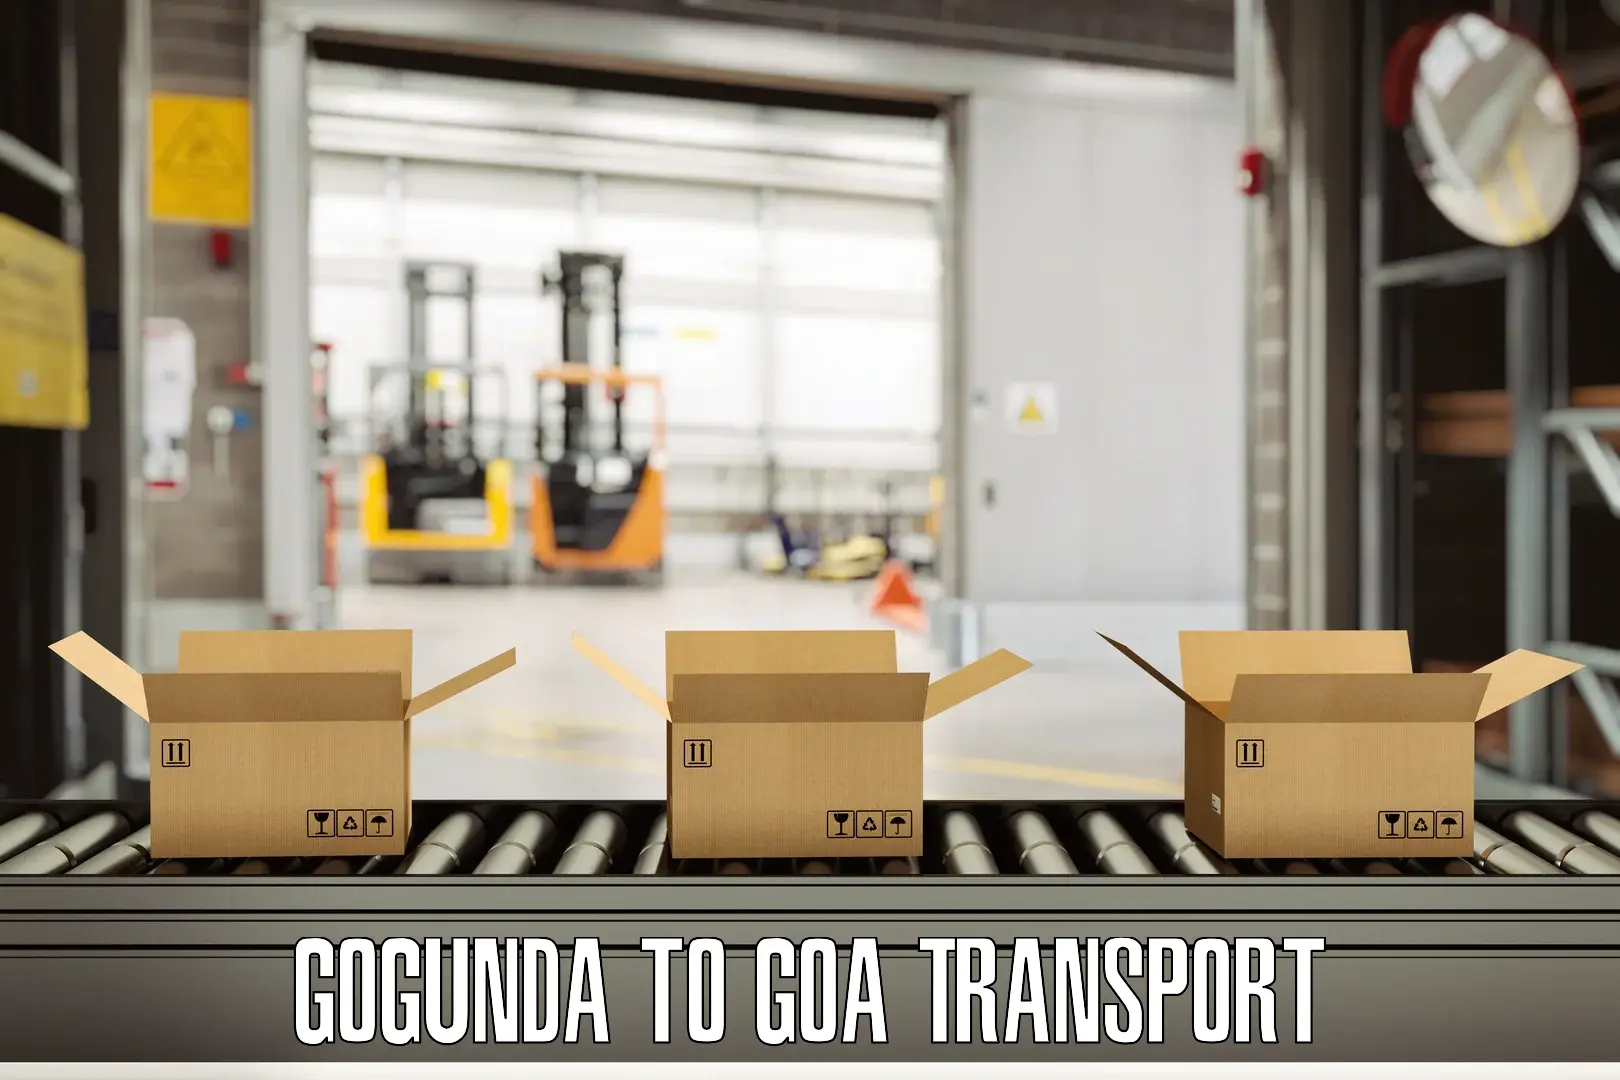 Transport in sharing Gogunda to Ponda